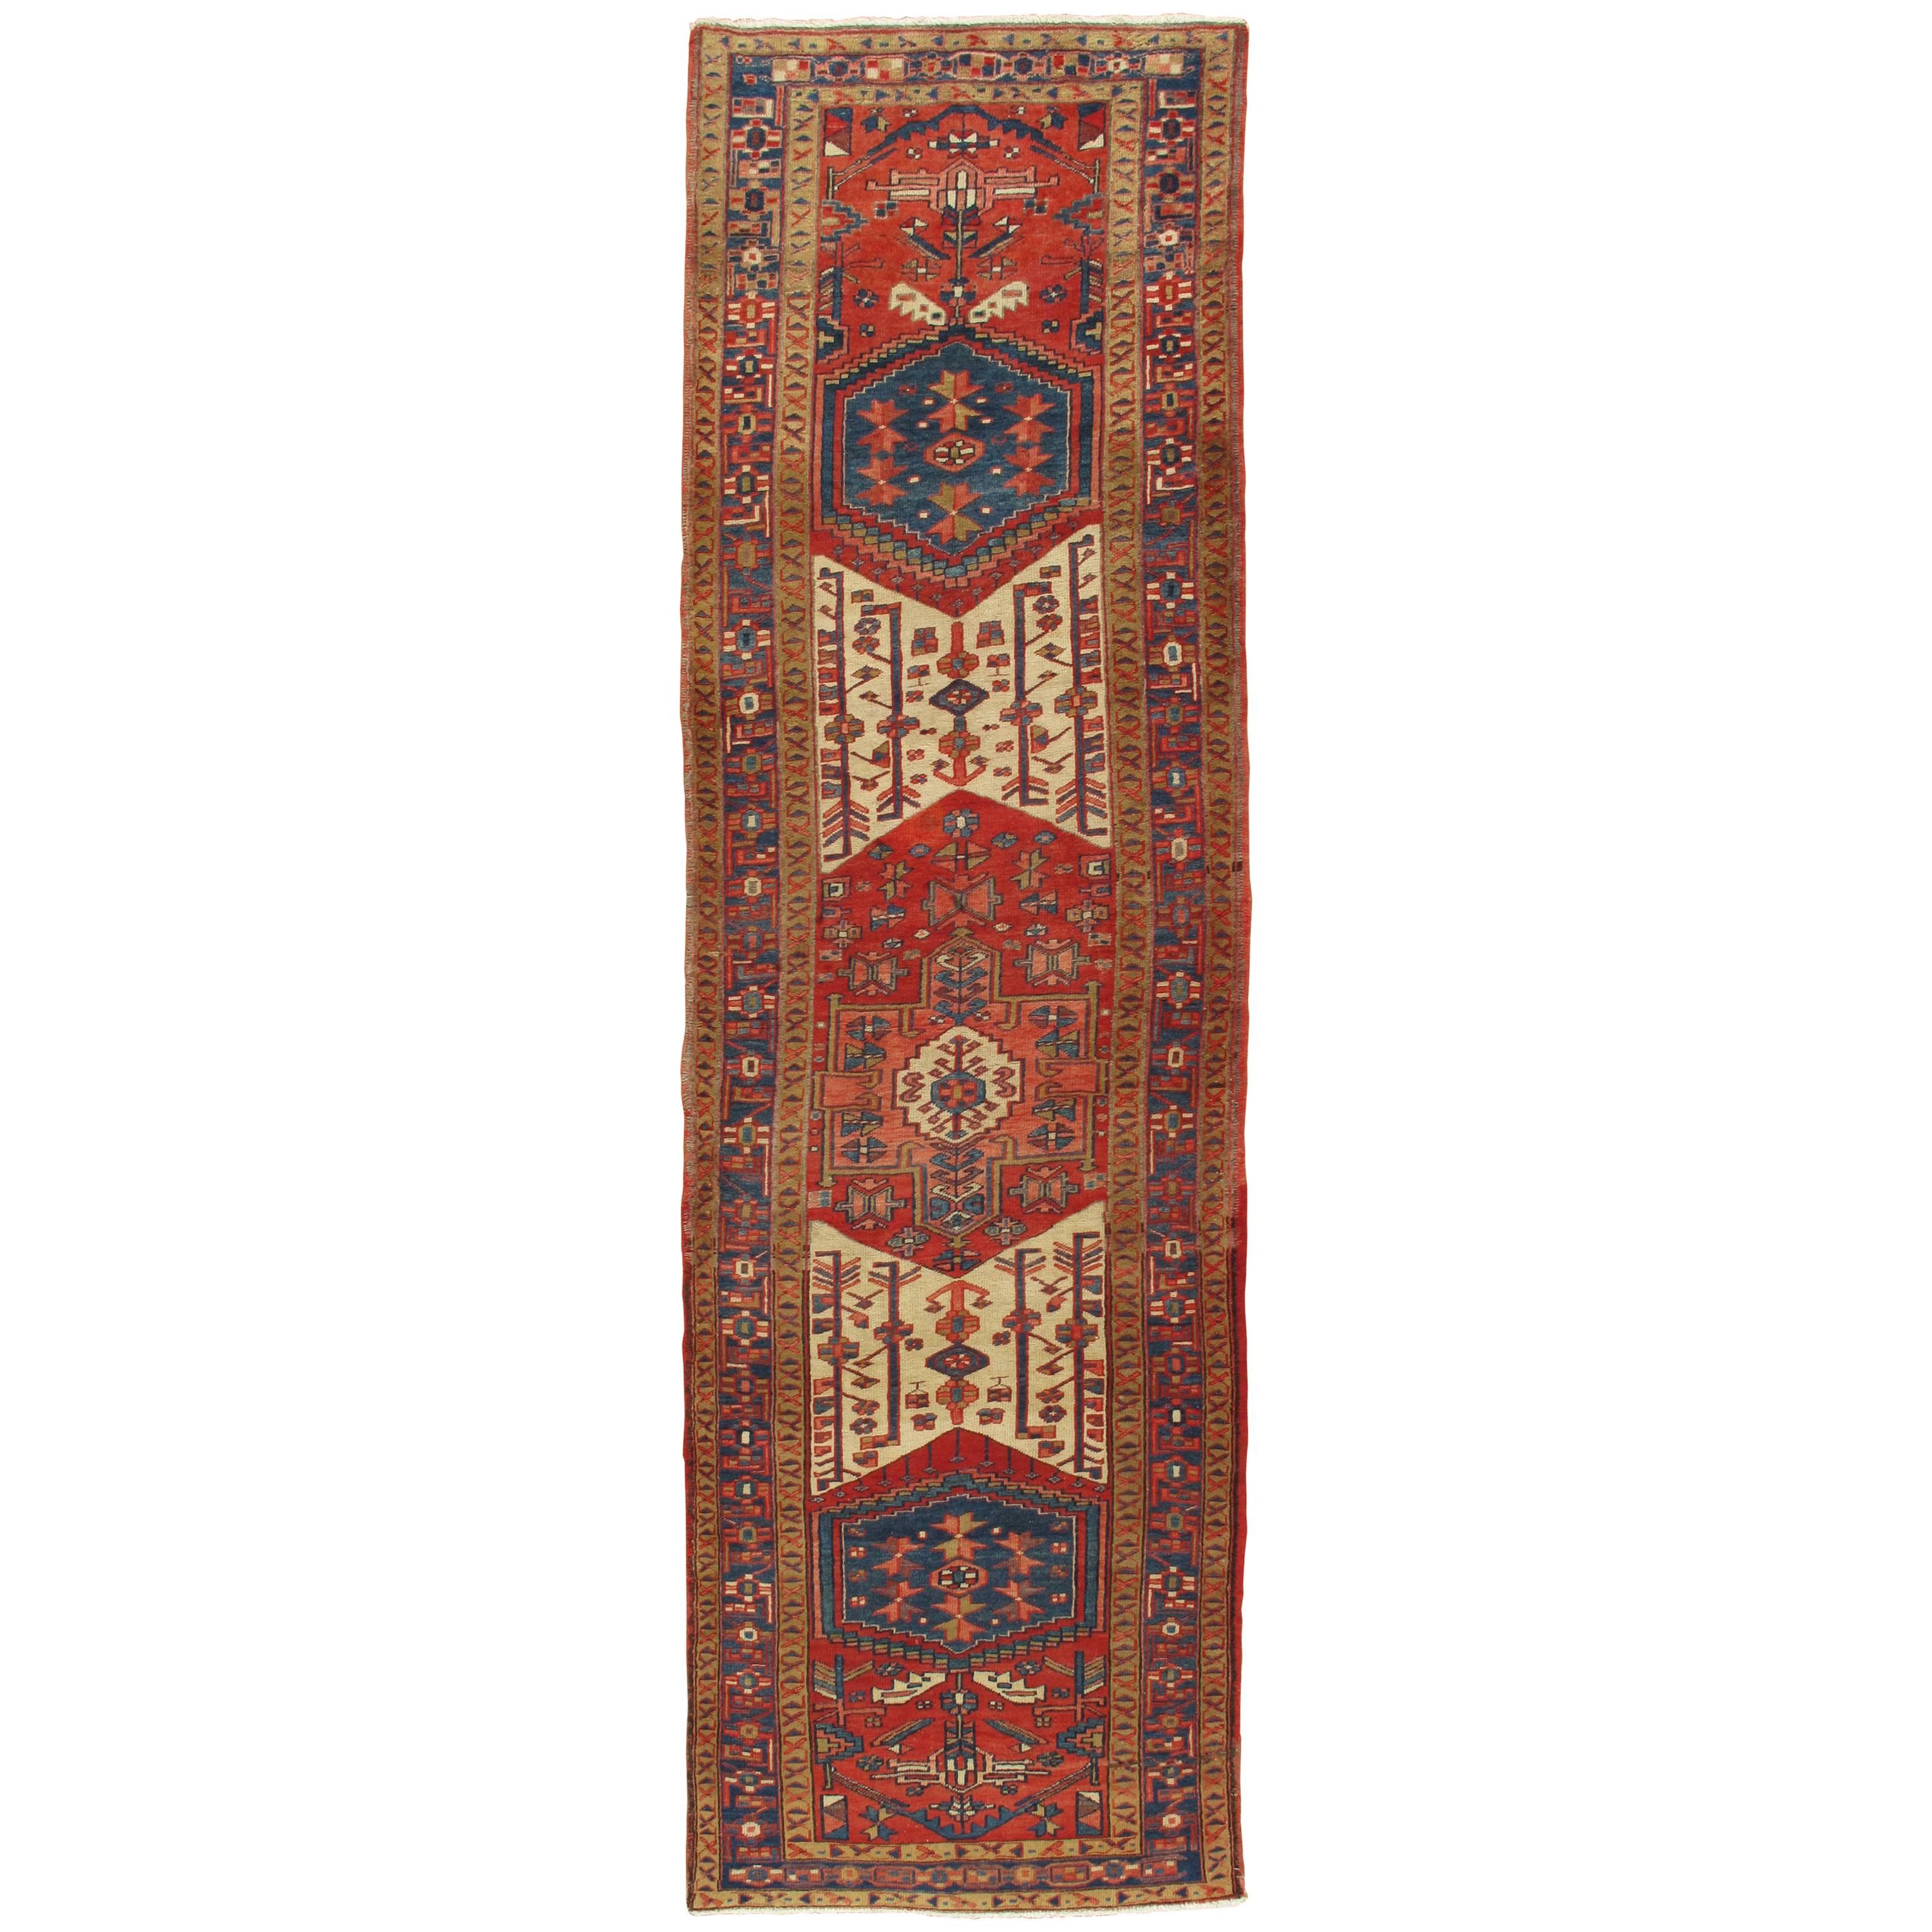 Tapis de couloir persan ancien Heriz Northwest, fait à la main, bleu marine, rouge, ivoire